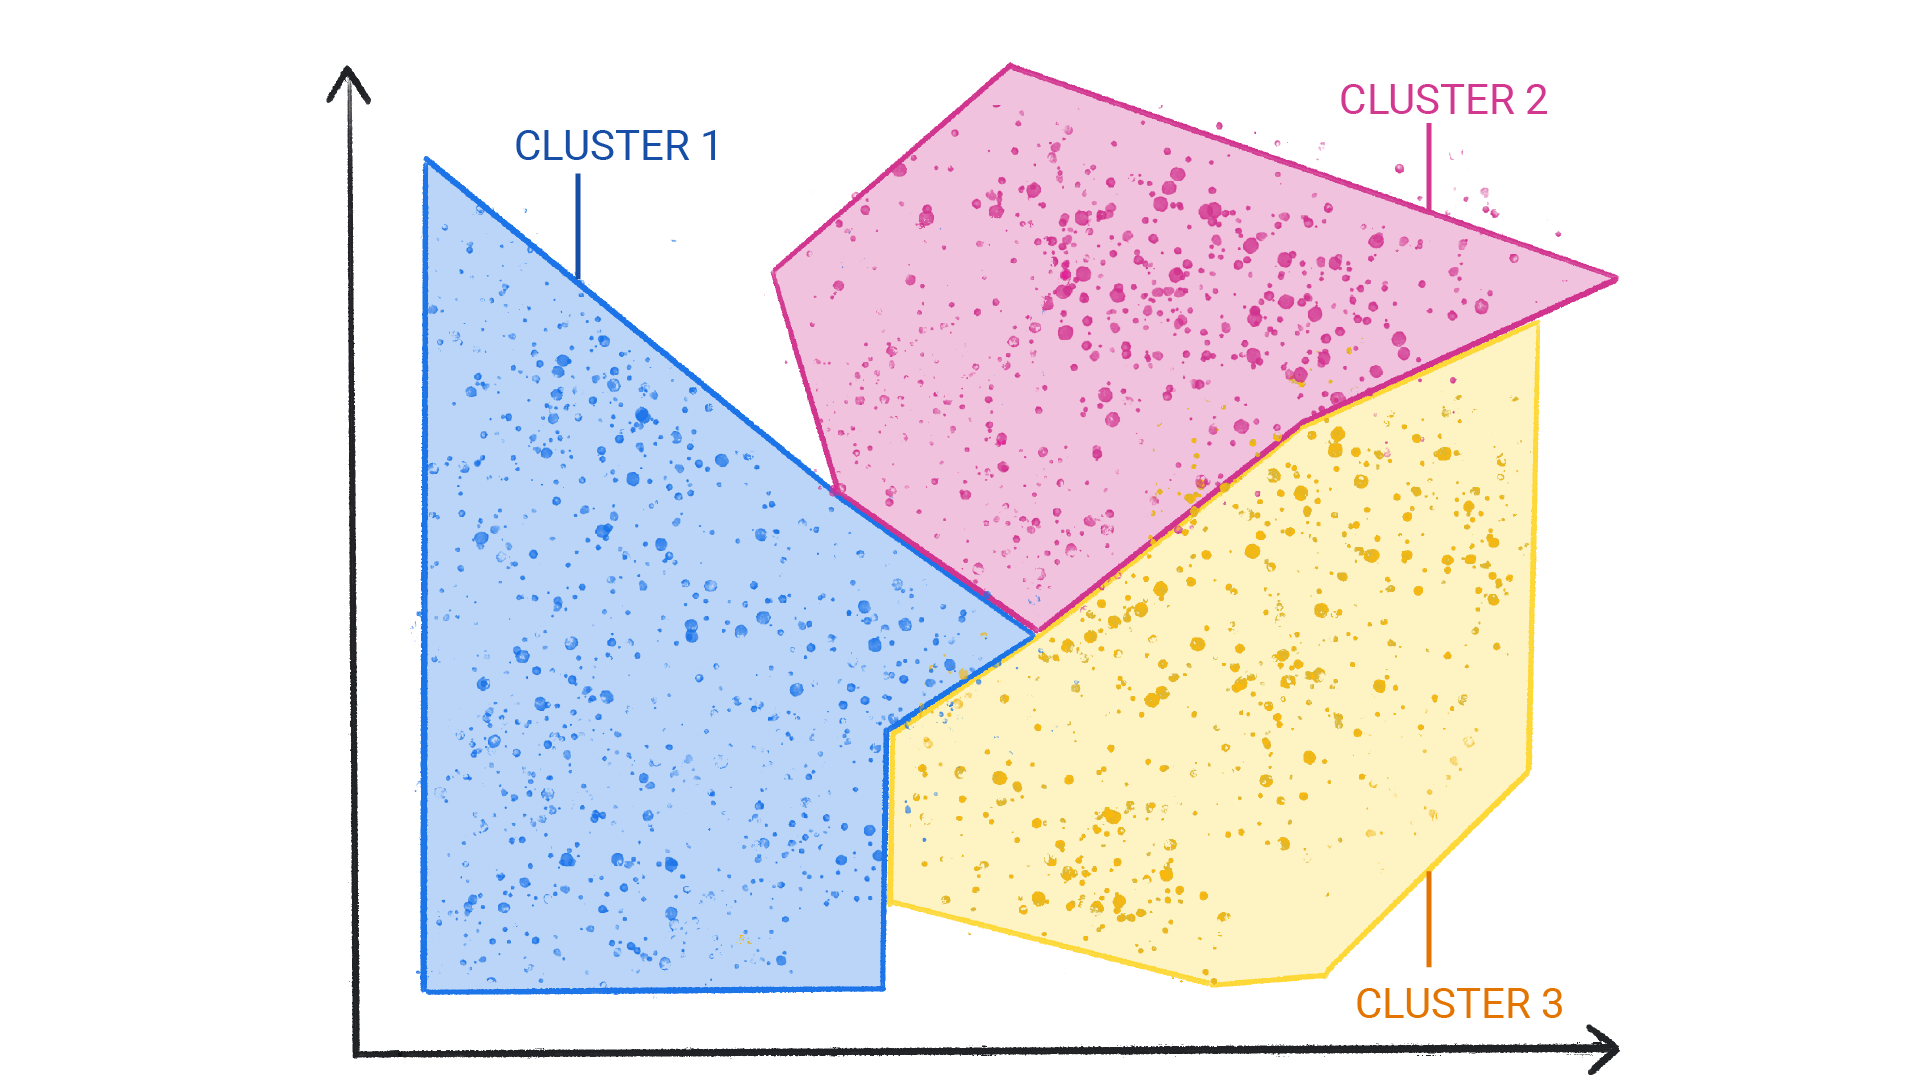 Obraz pokazujący kolorowe kropki w klastrach, które są ułożone w kształty, które są ze sobą obramowane.